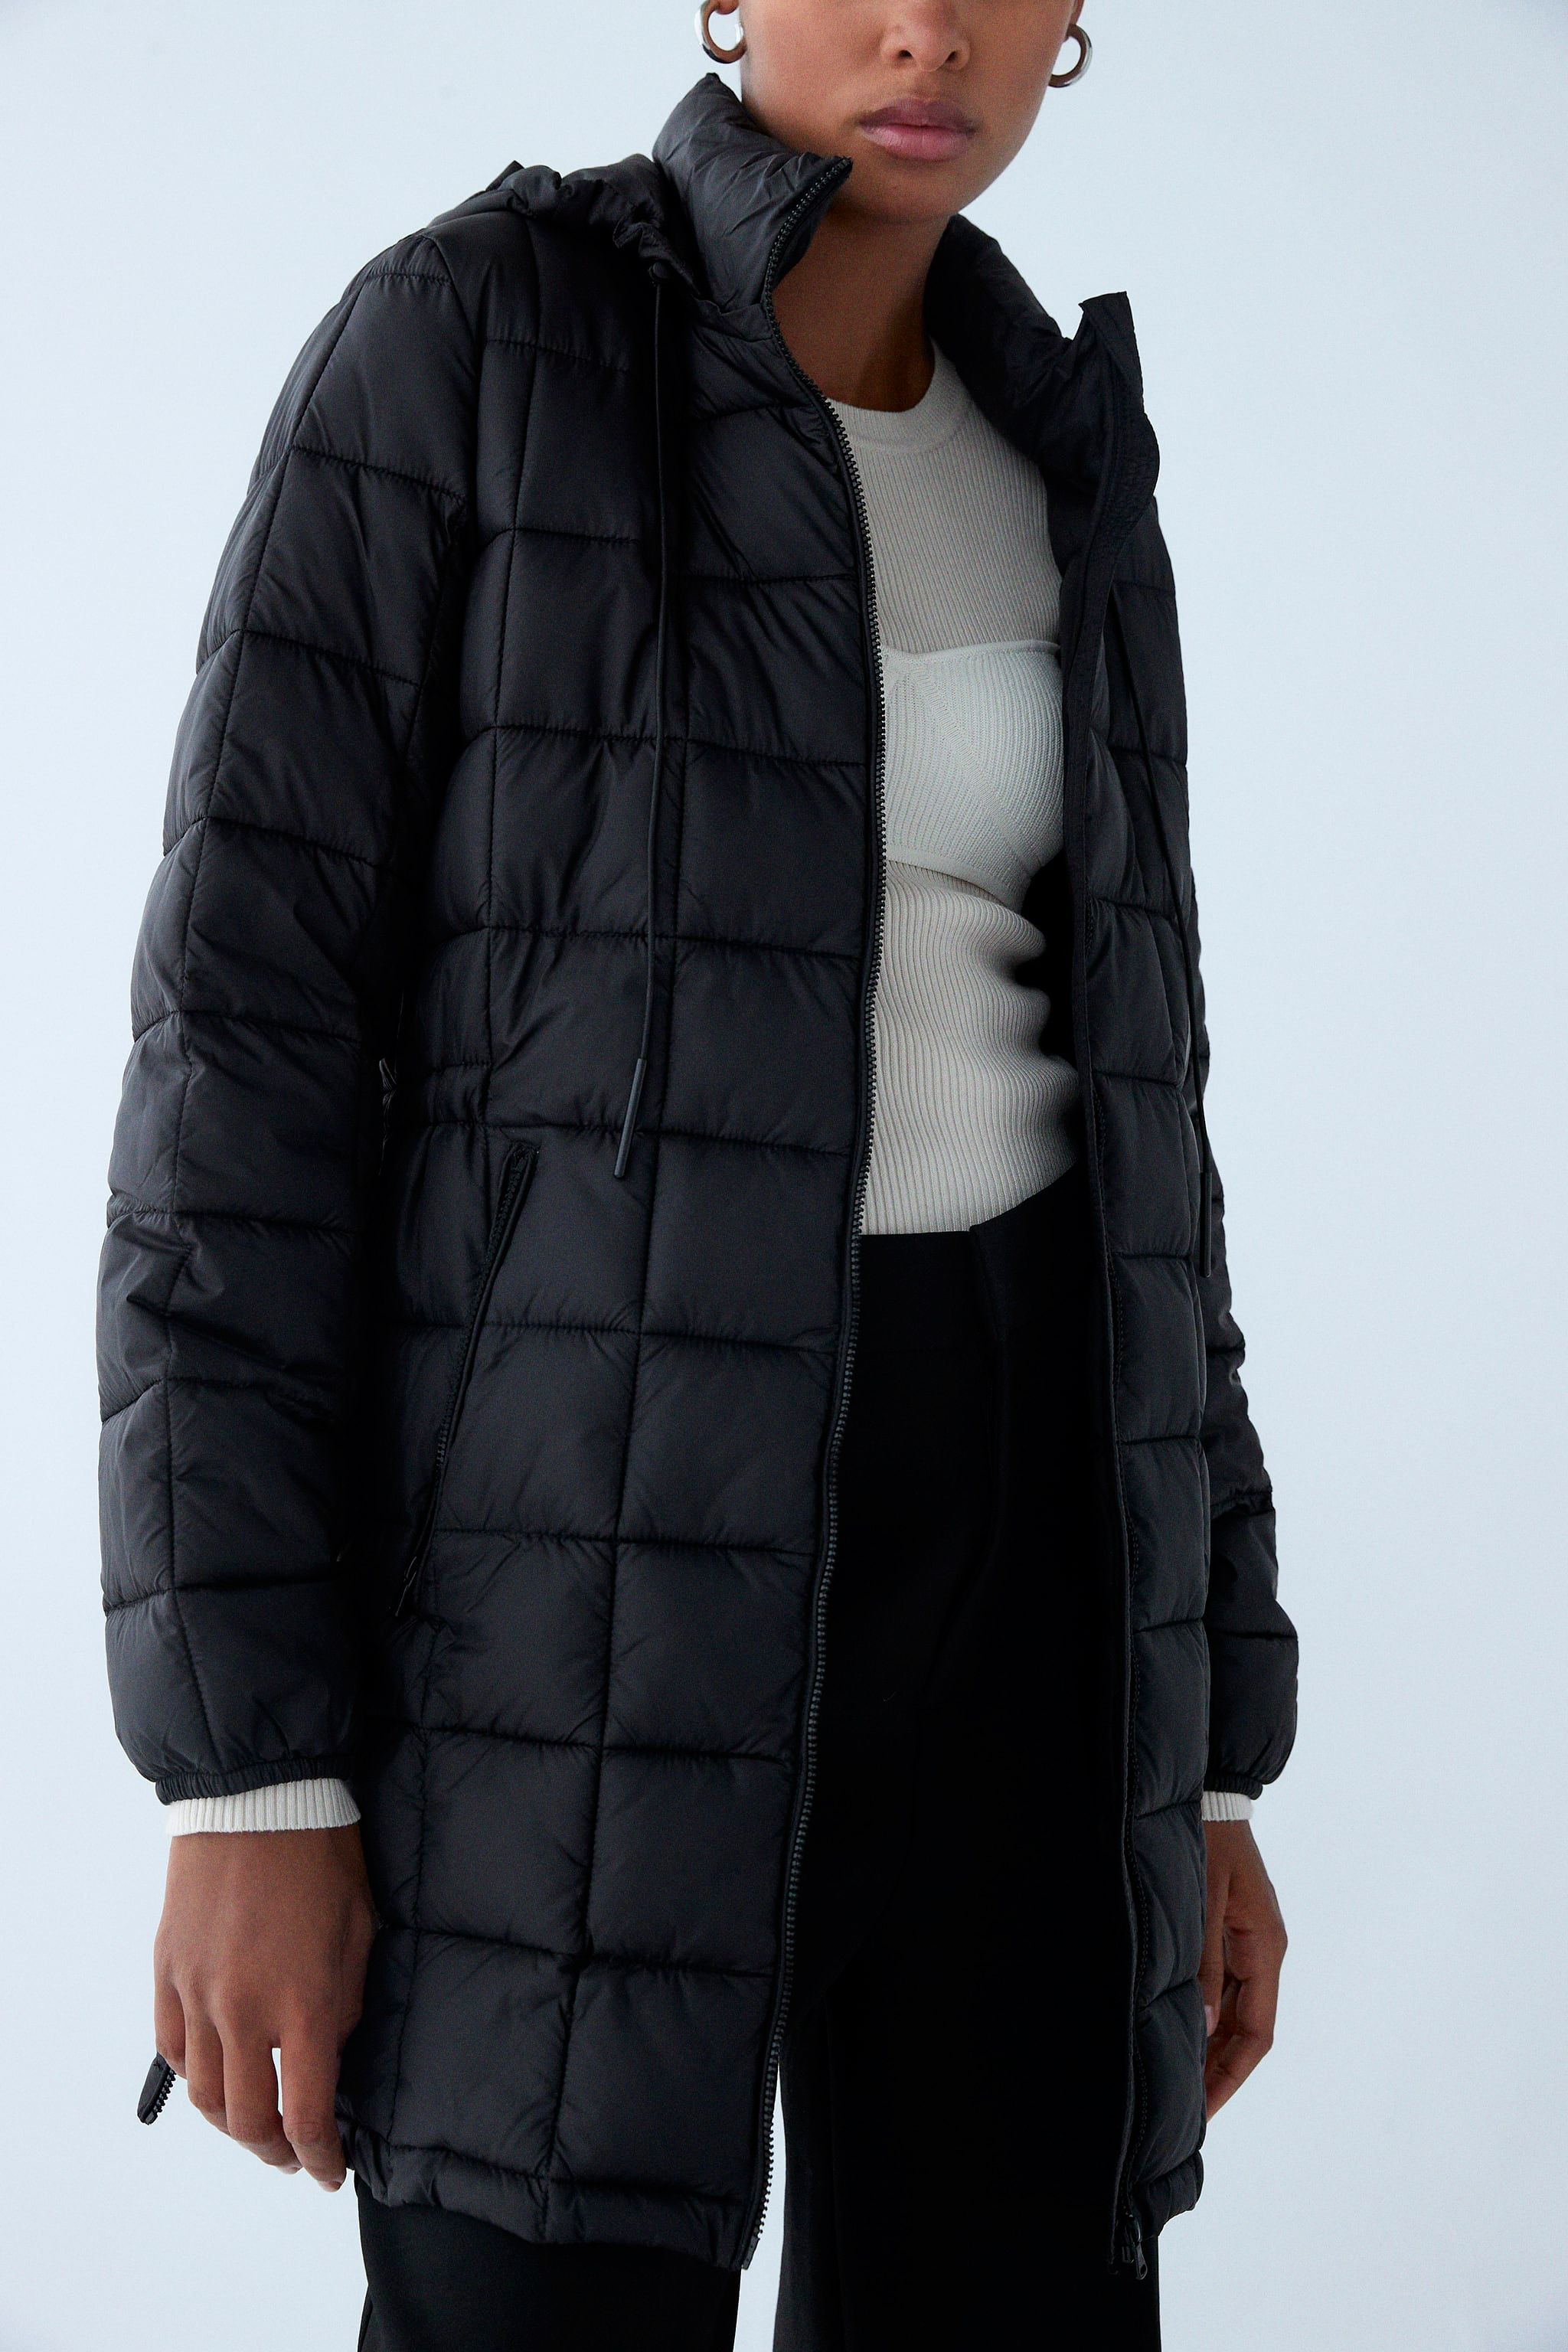 Disfraces emoción Ciudad Menda El abrigo plumífero negro sostenible de Zara que arrasa en ventas